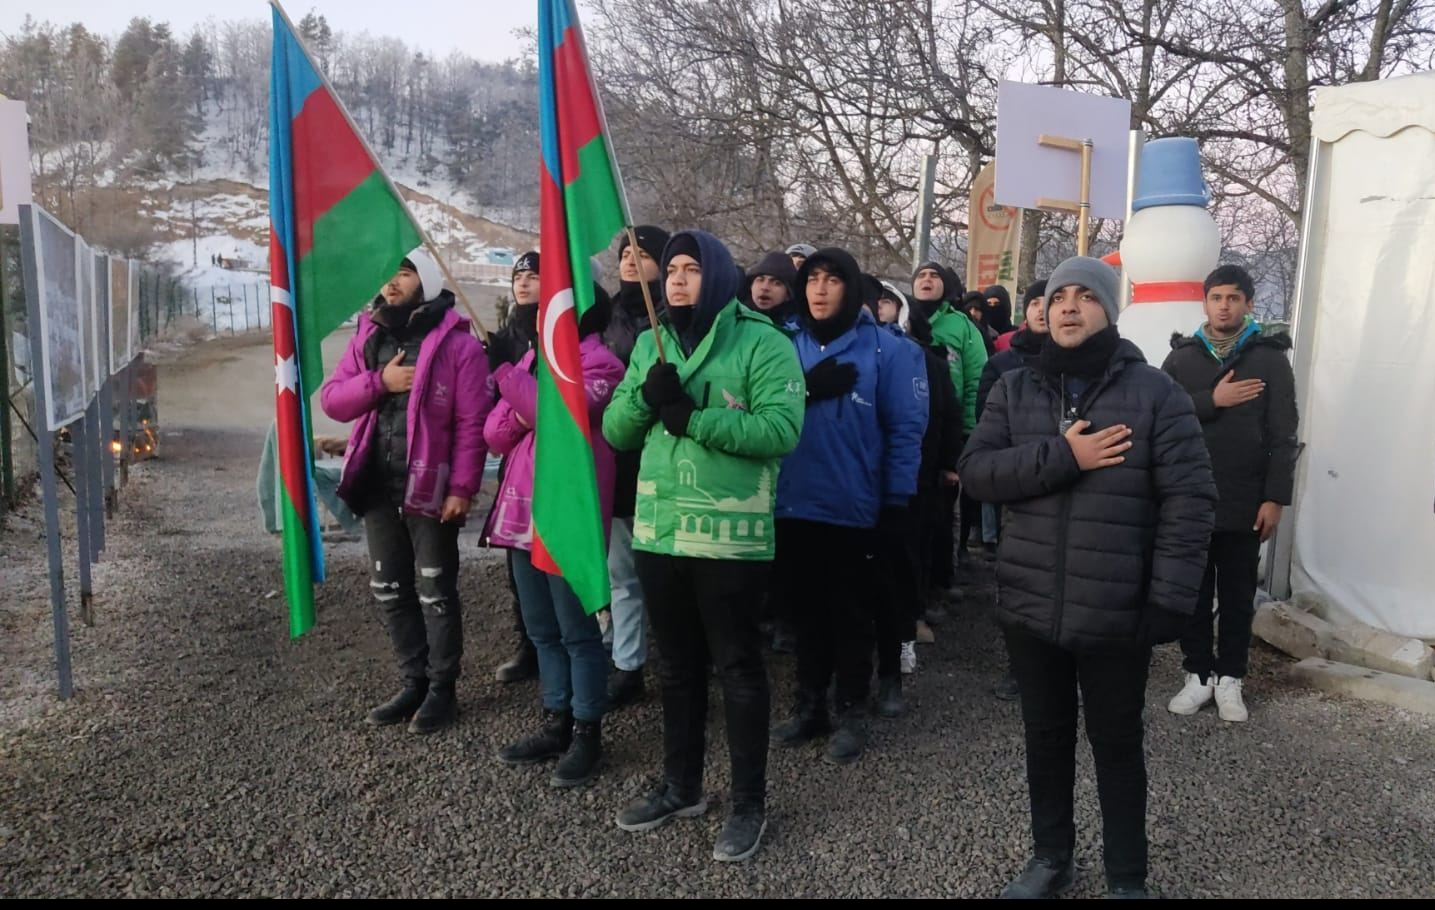   Azerbaijani activists